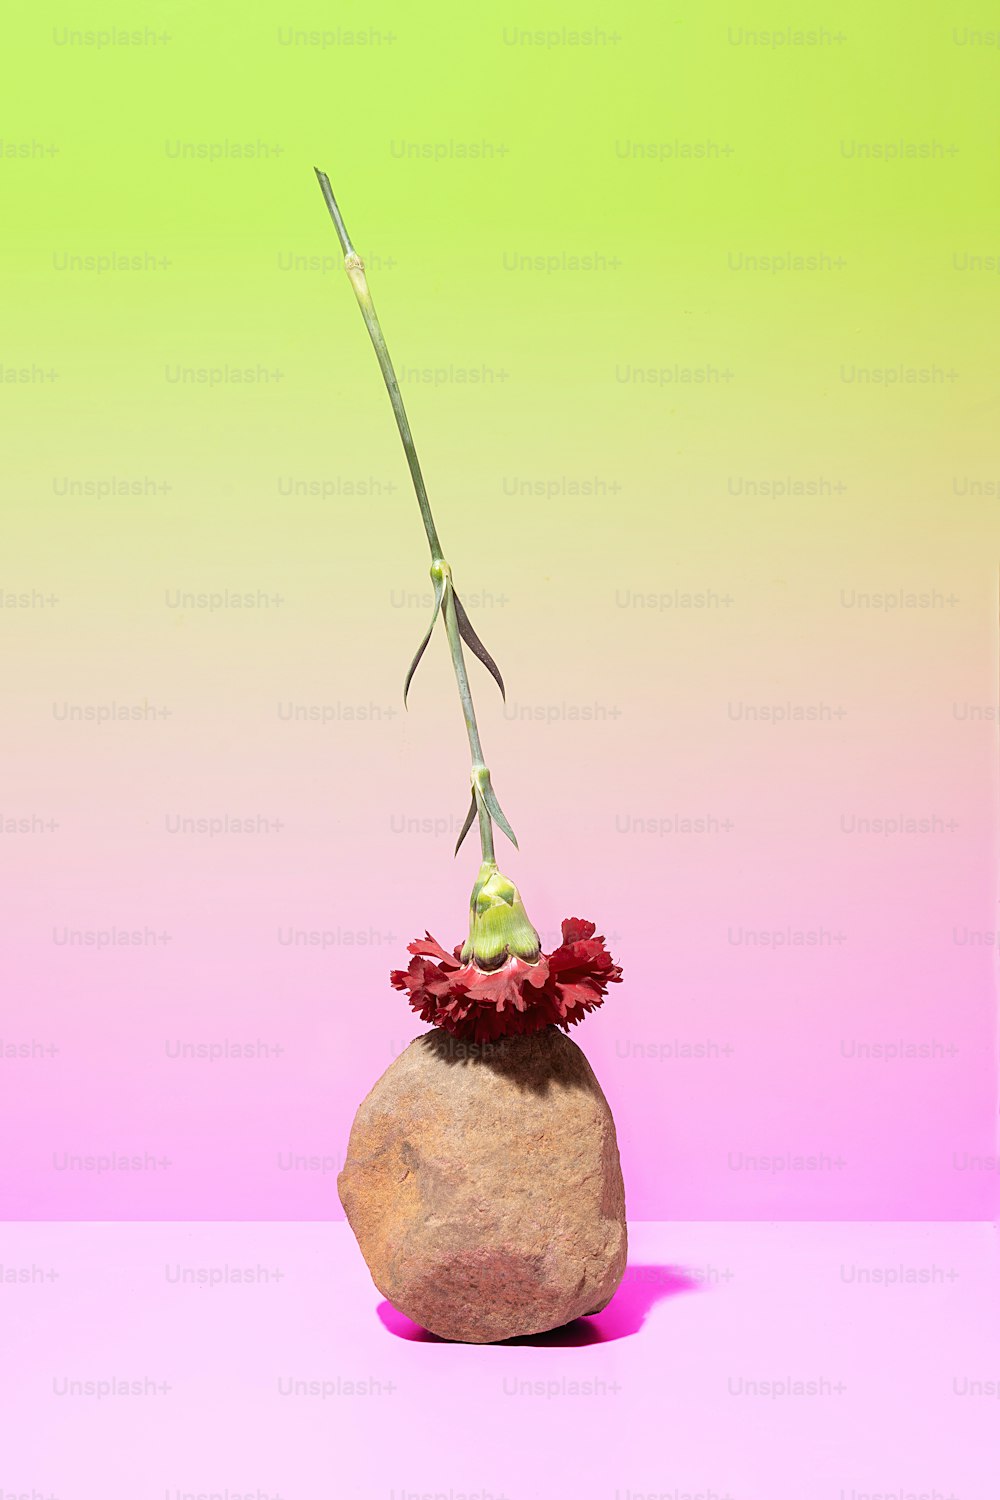 uma rocha com uma flor em um fundo rosa e verde